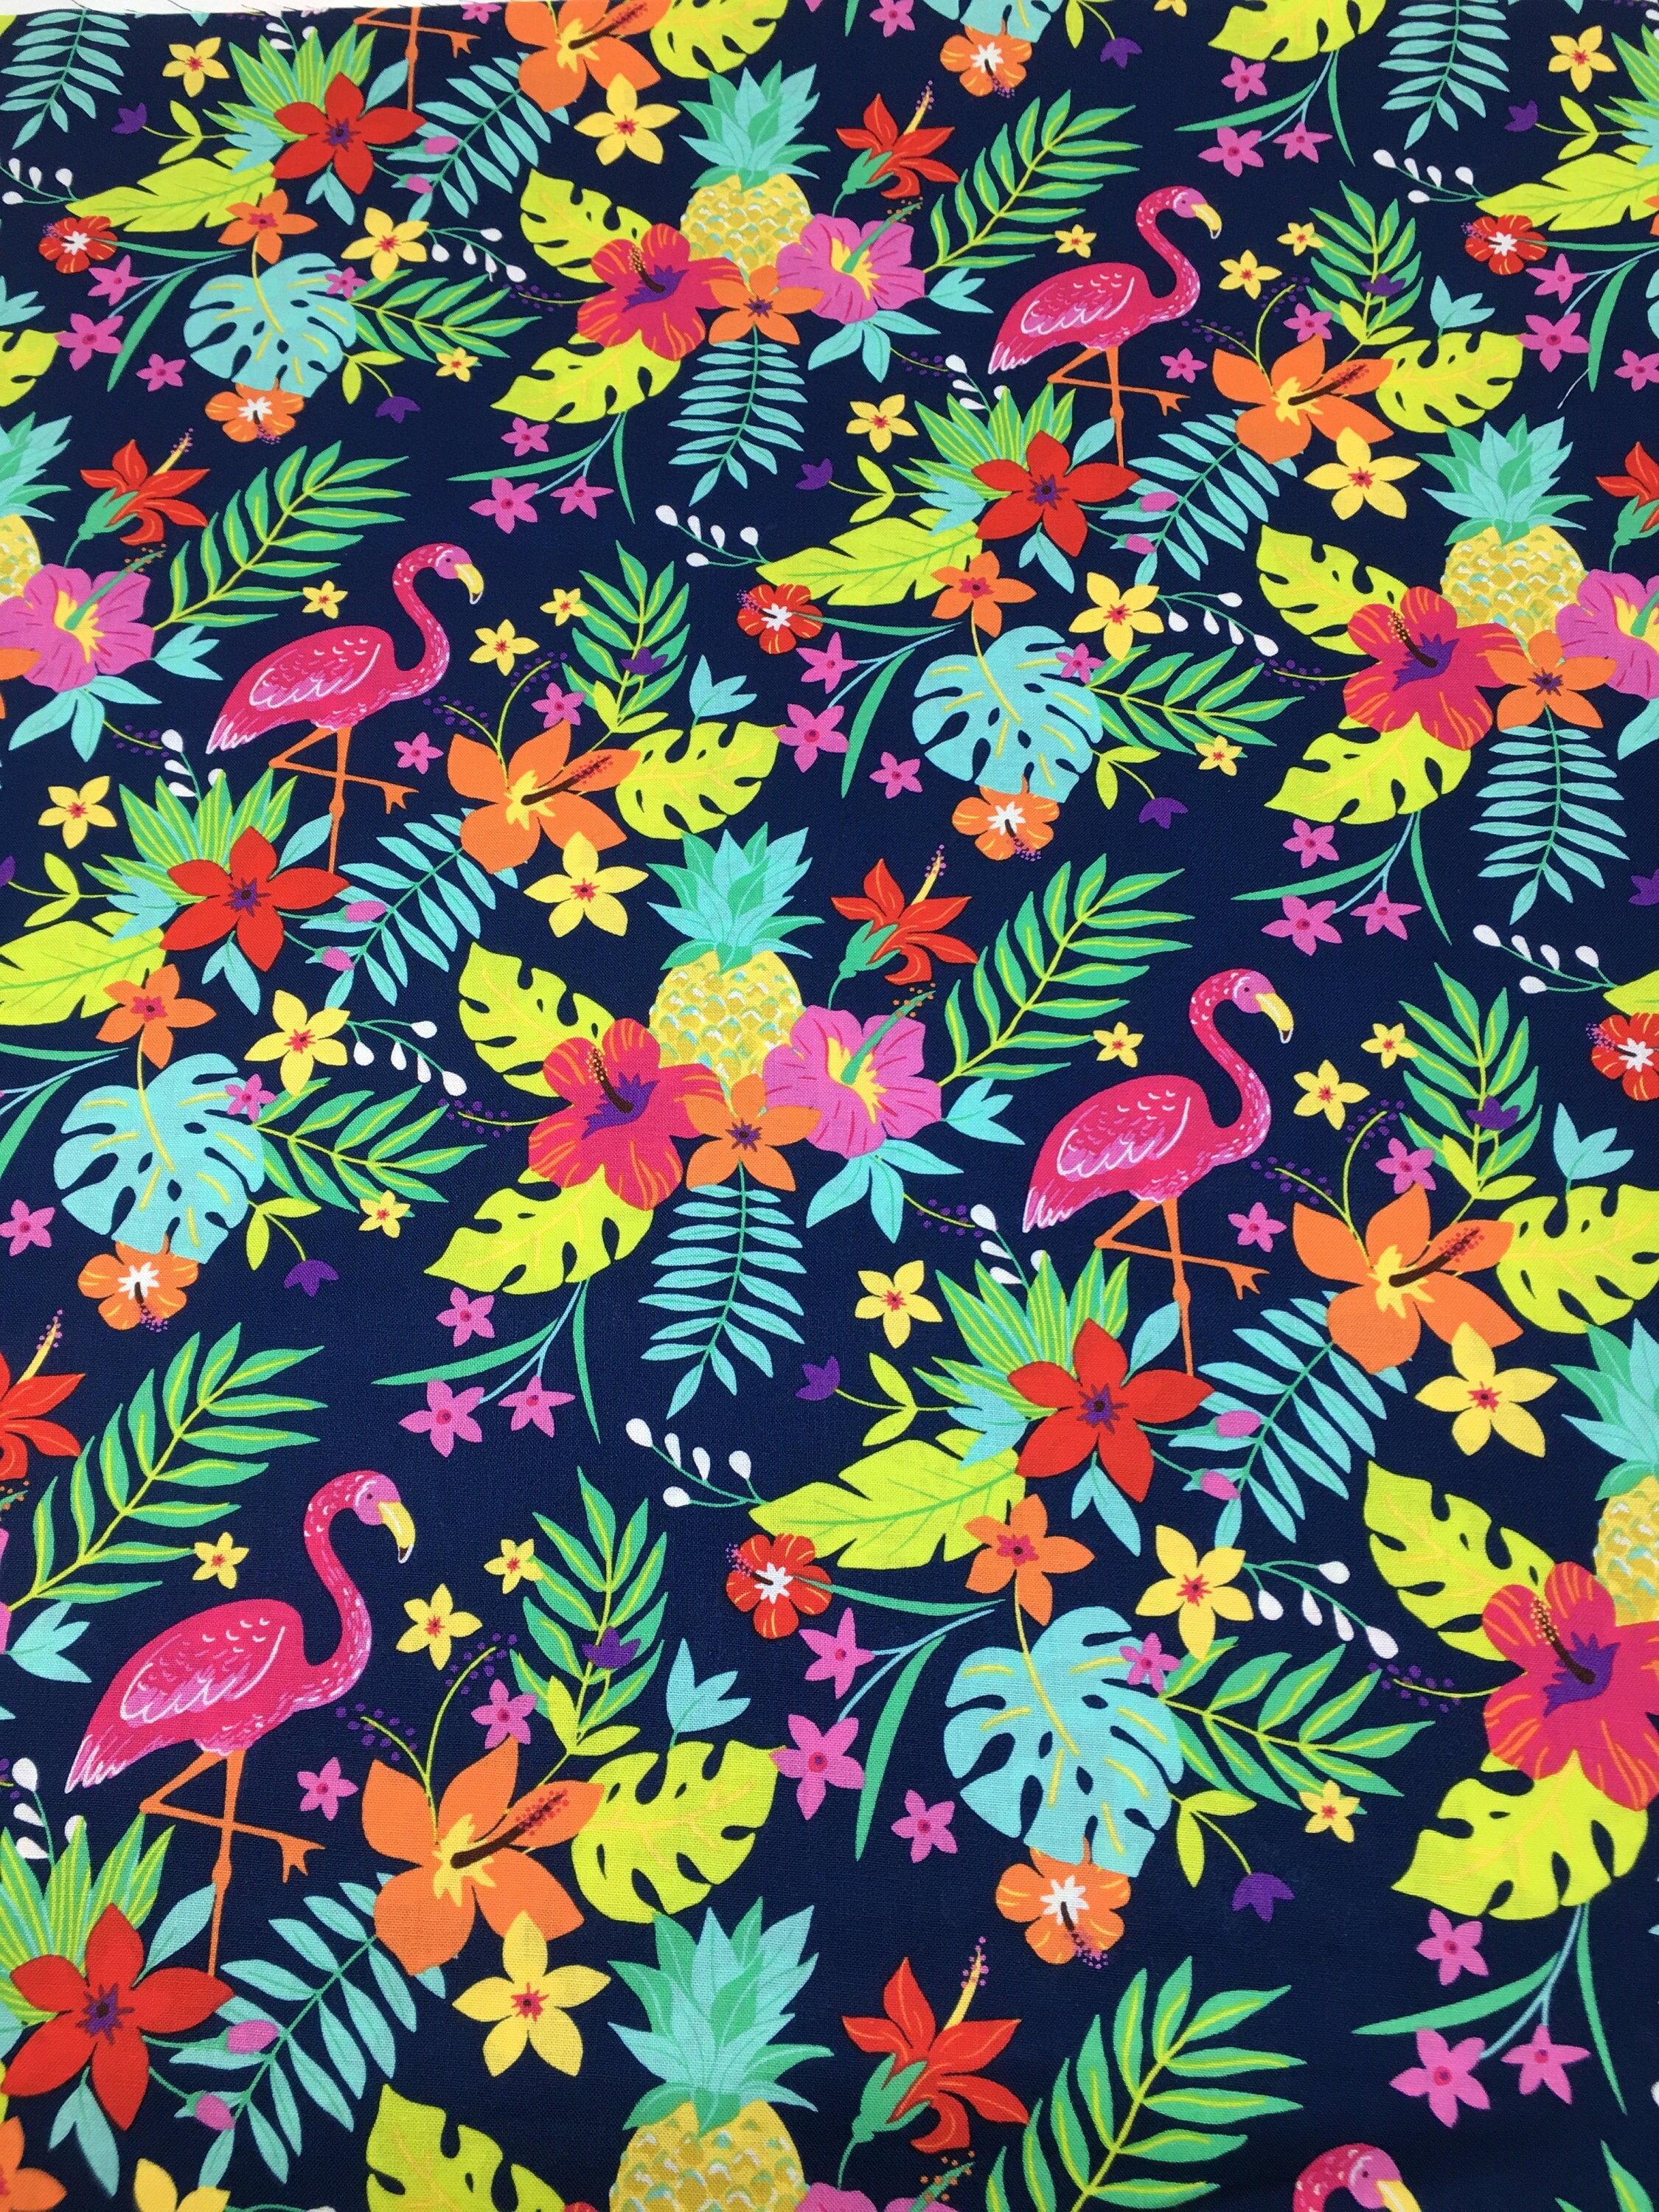 Tropical Leaf Flamingos Fabric Fabric by the Yard Fat - Etsy